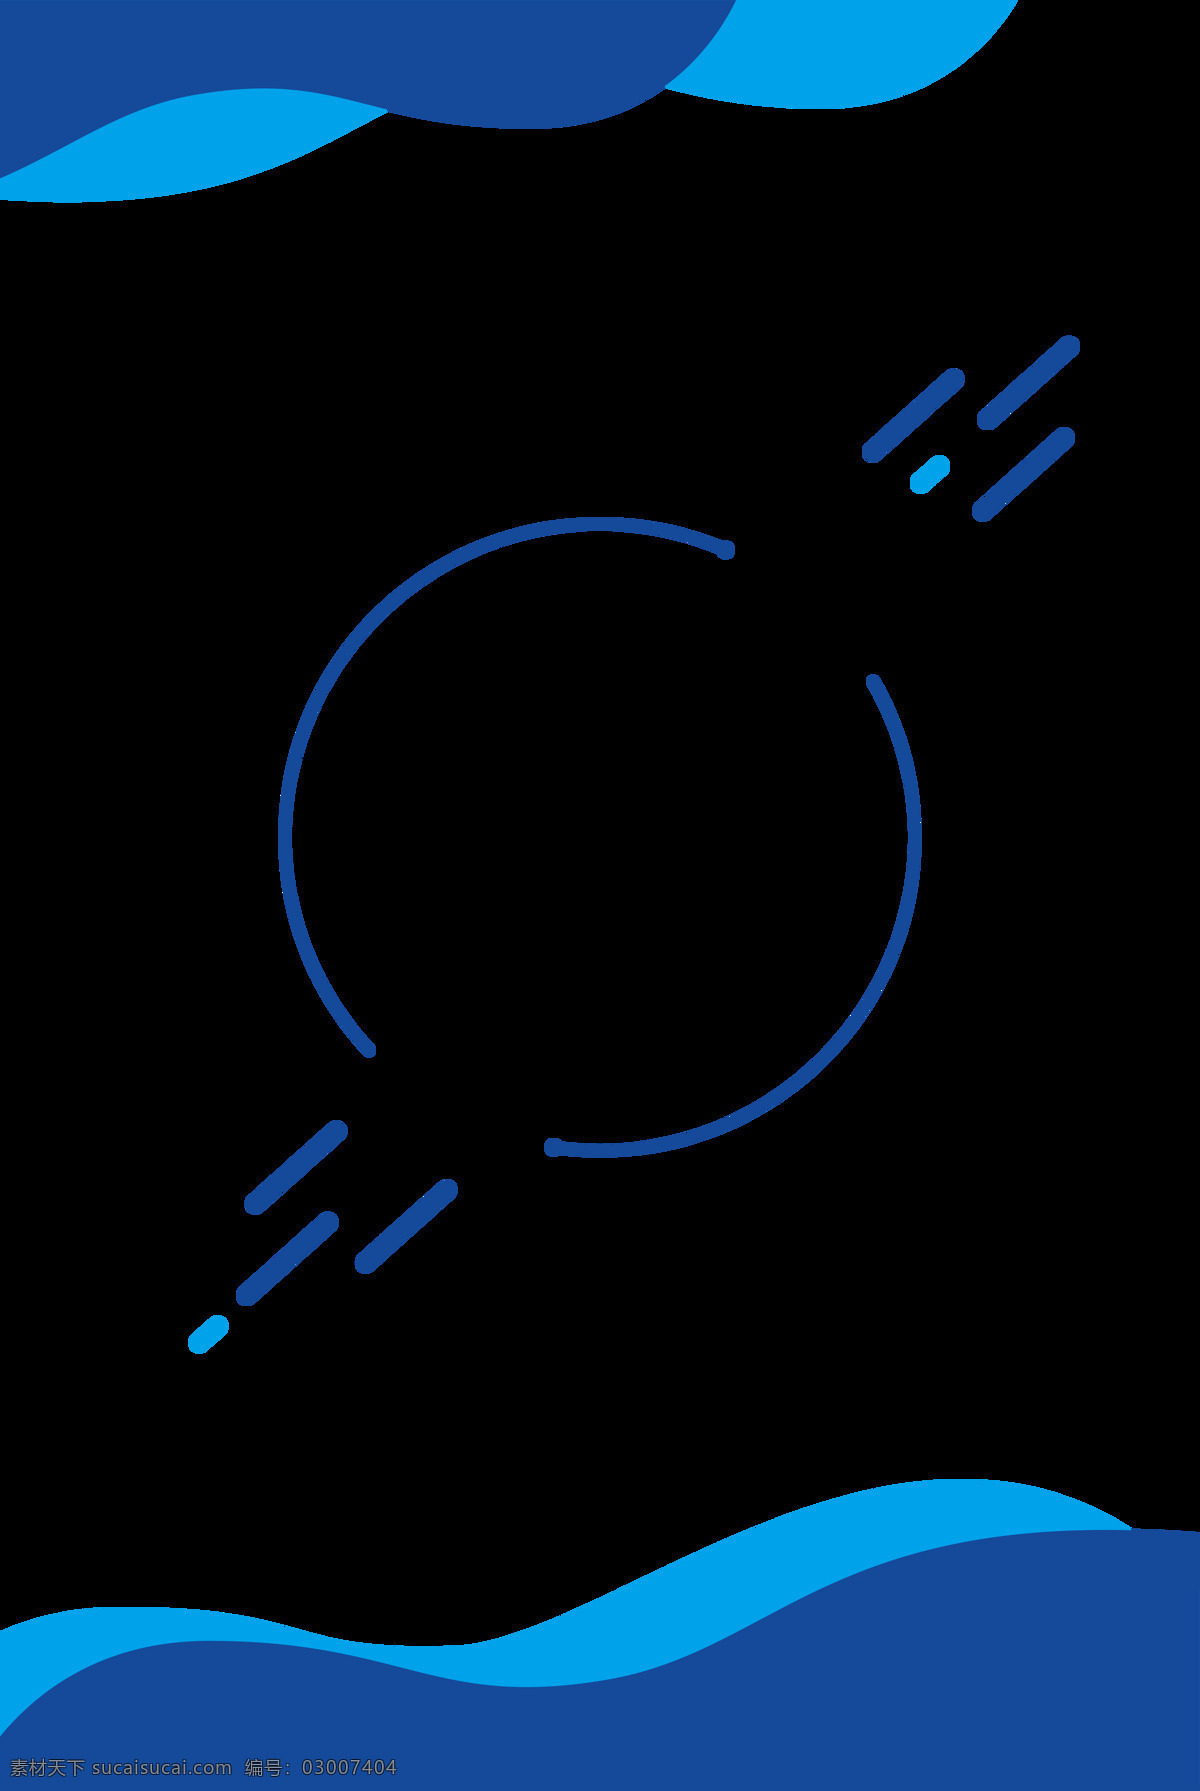 蓝色背景 蓝色 几何 科技感 高科技 梦幻 年会 商务 电子商务 手机端 h5背景 科技背景 海报 底纹边框 背景底纹